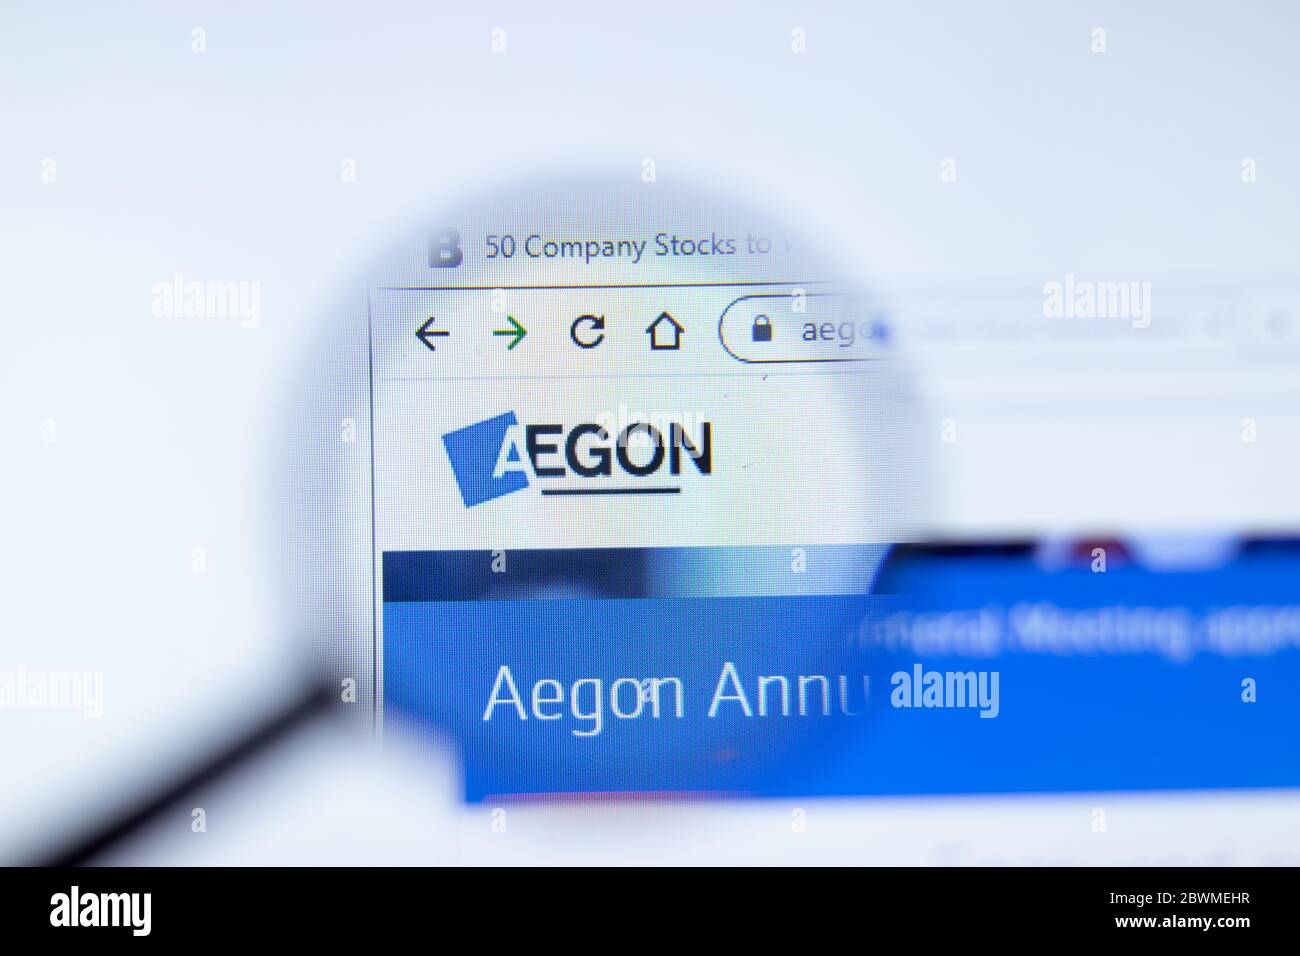 Mosca, Russia - 1 giugno 2020: Aegon.com pagina del sito web. Logo aziendale Aegon Group sullo schermo, editoriale illustrativo. Foto Stock